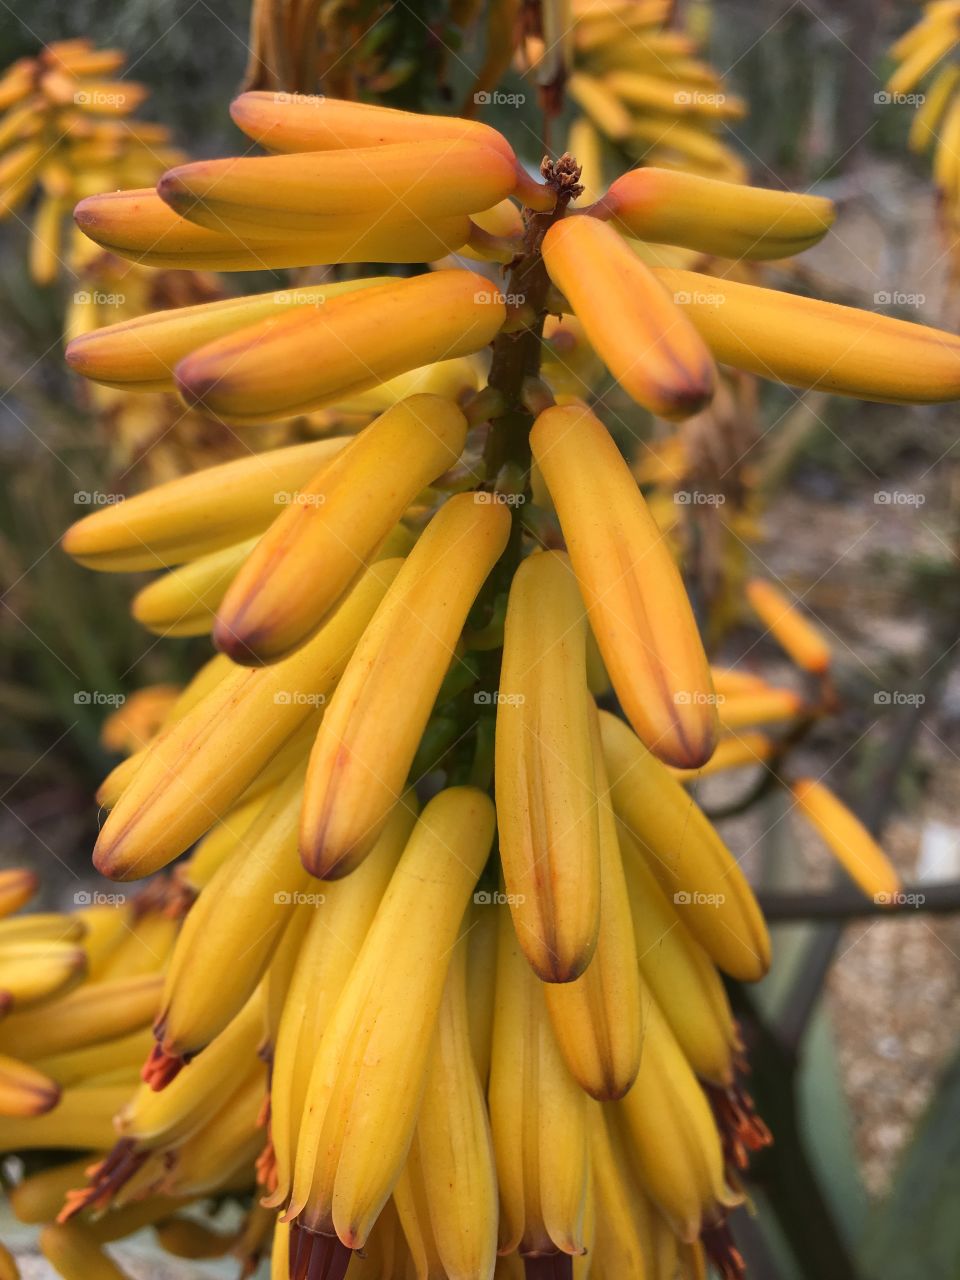 Yellow Banana style flower